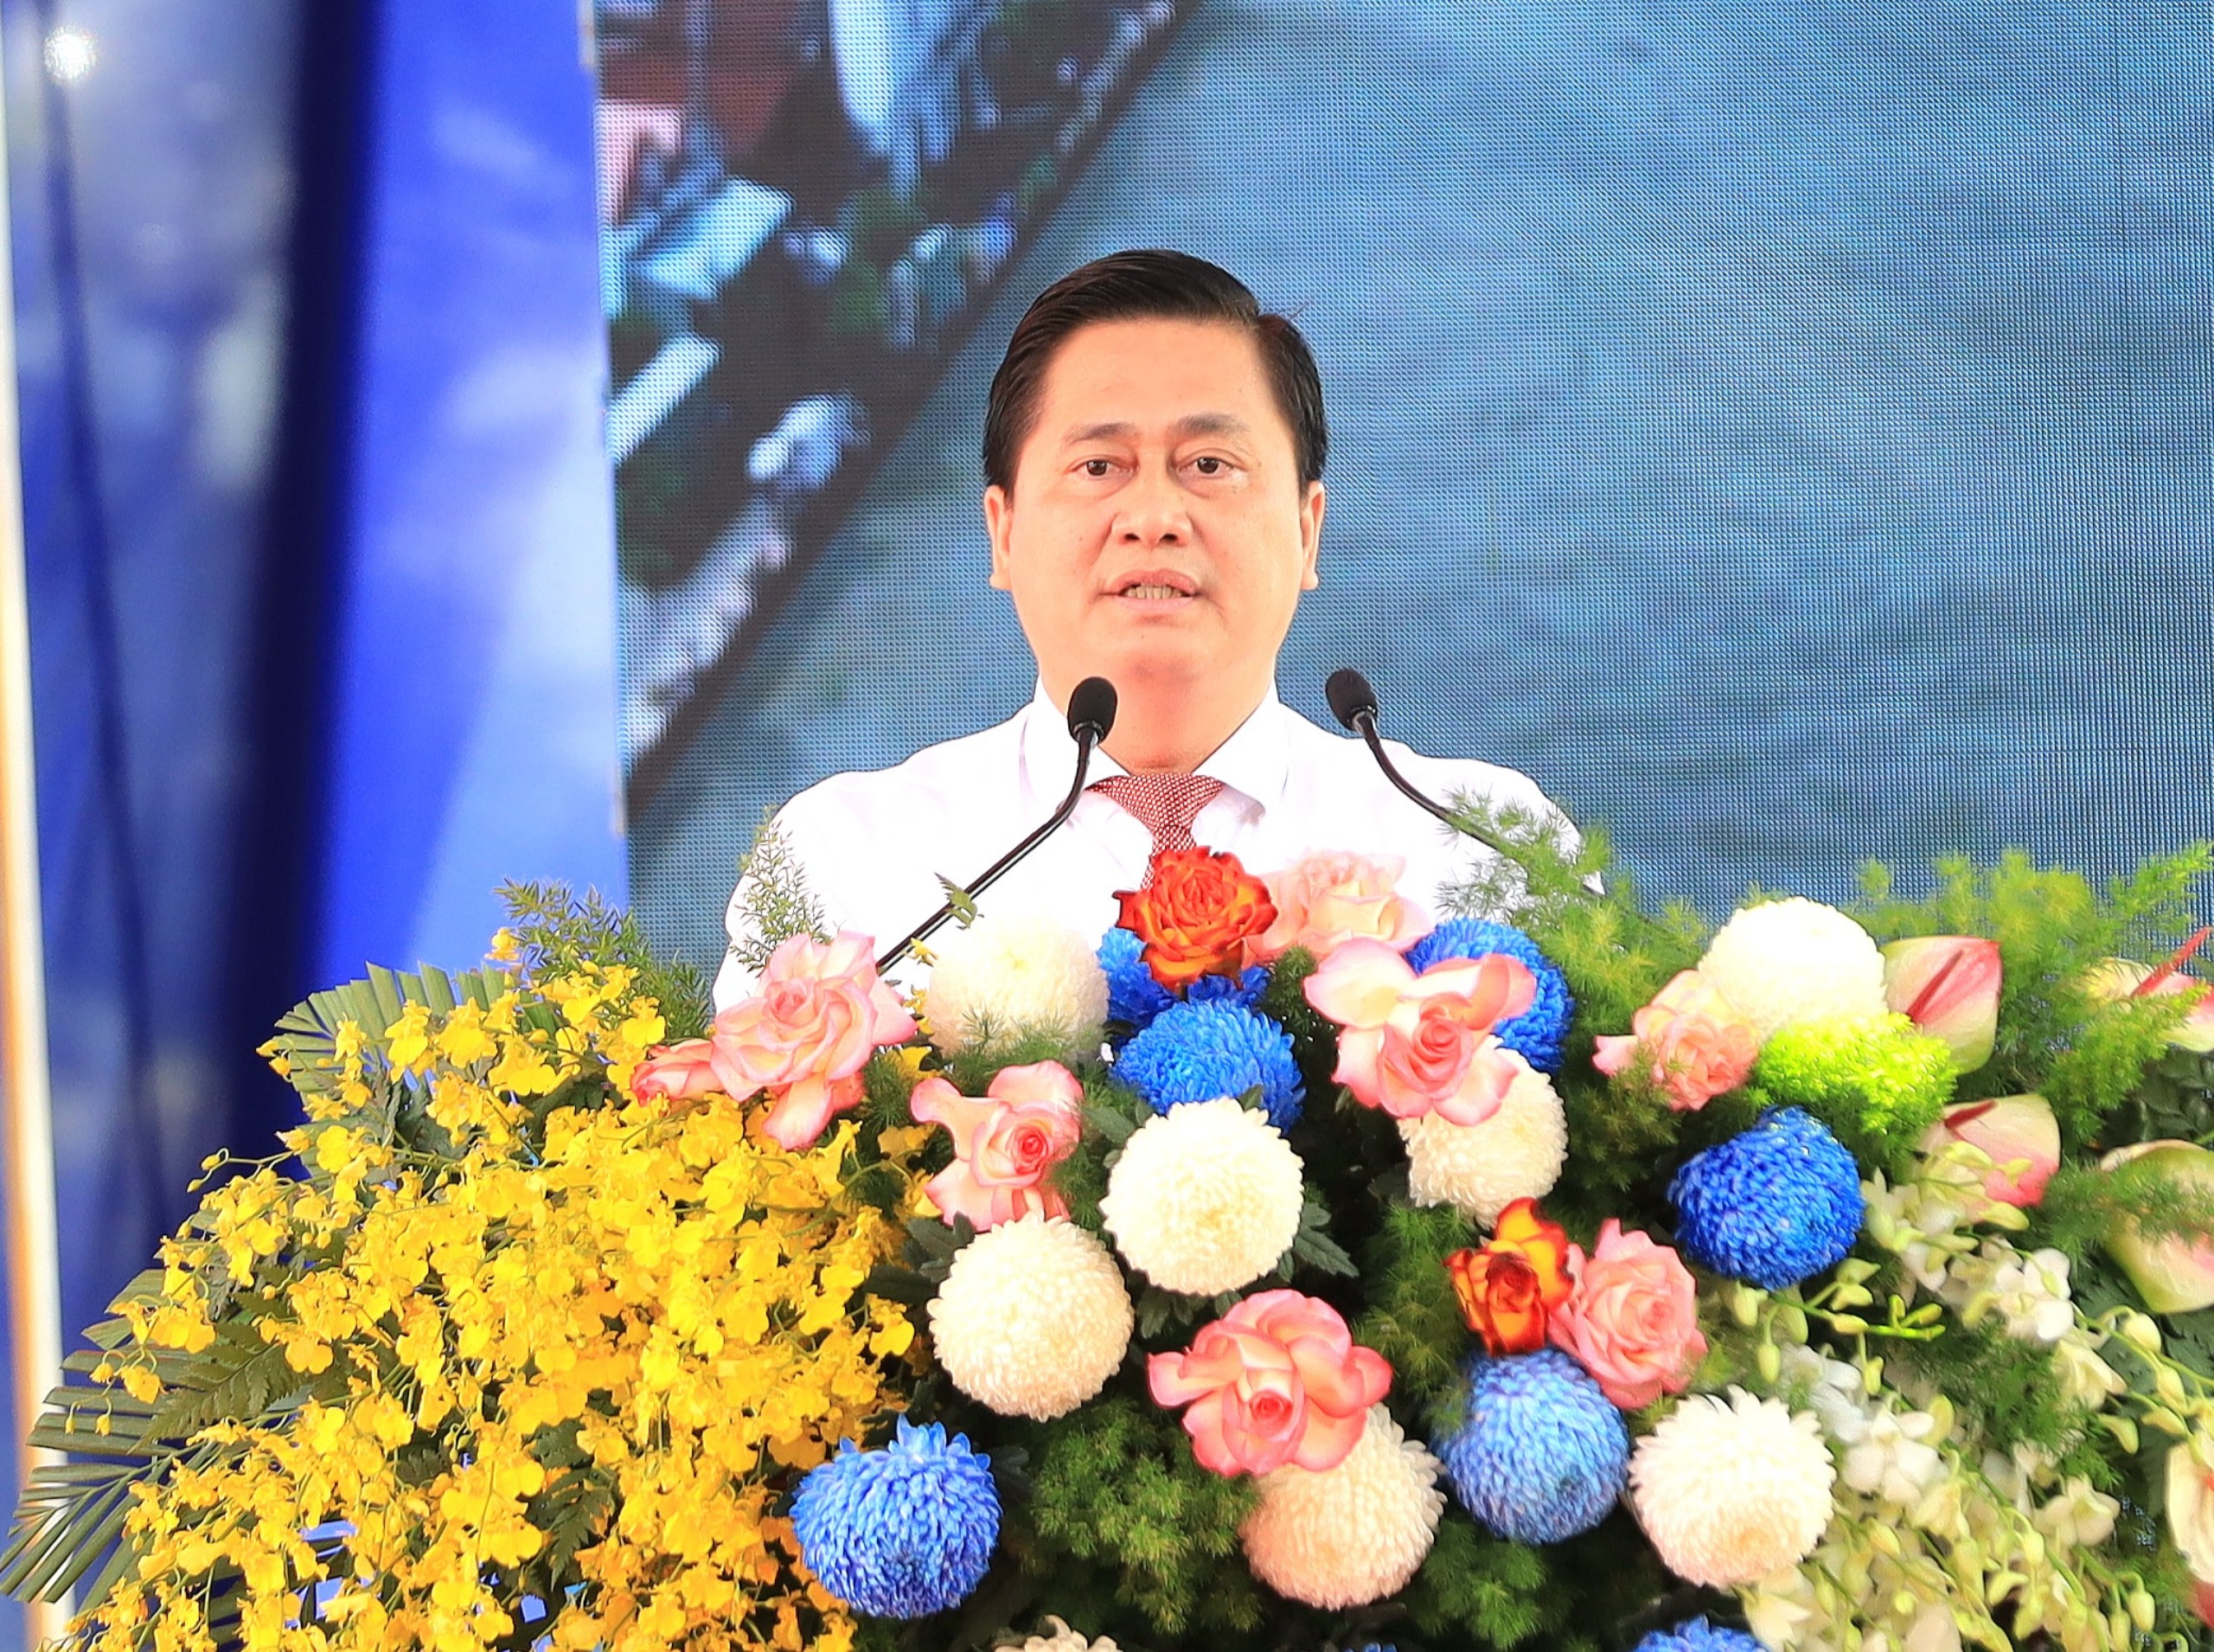 Ông Võ Anh Huy – Phó Bí Quận ủy, Chủ tịch UBND quận Ô Môn đọc diễn văn tại buổi lễ.